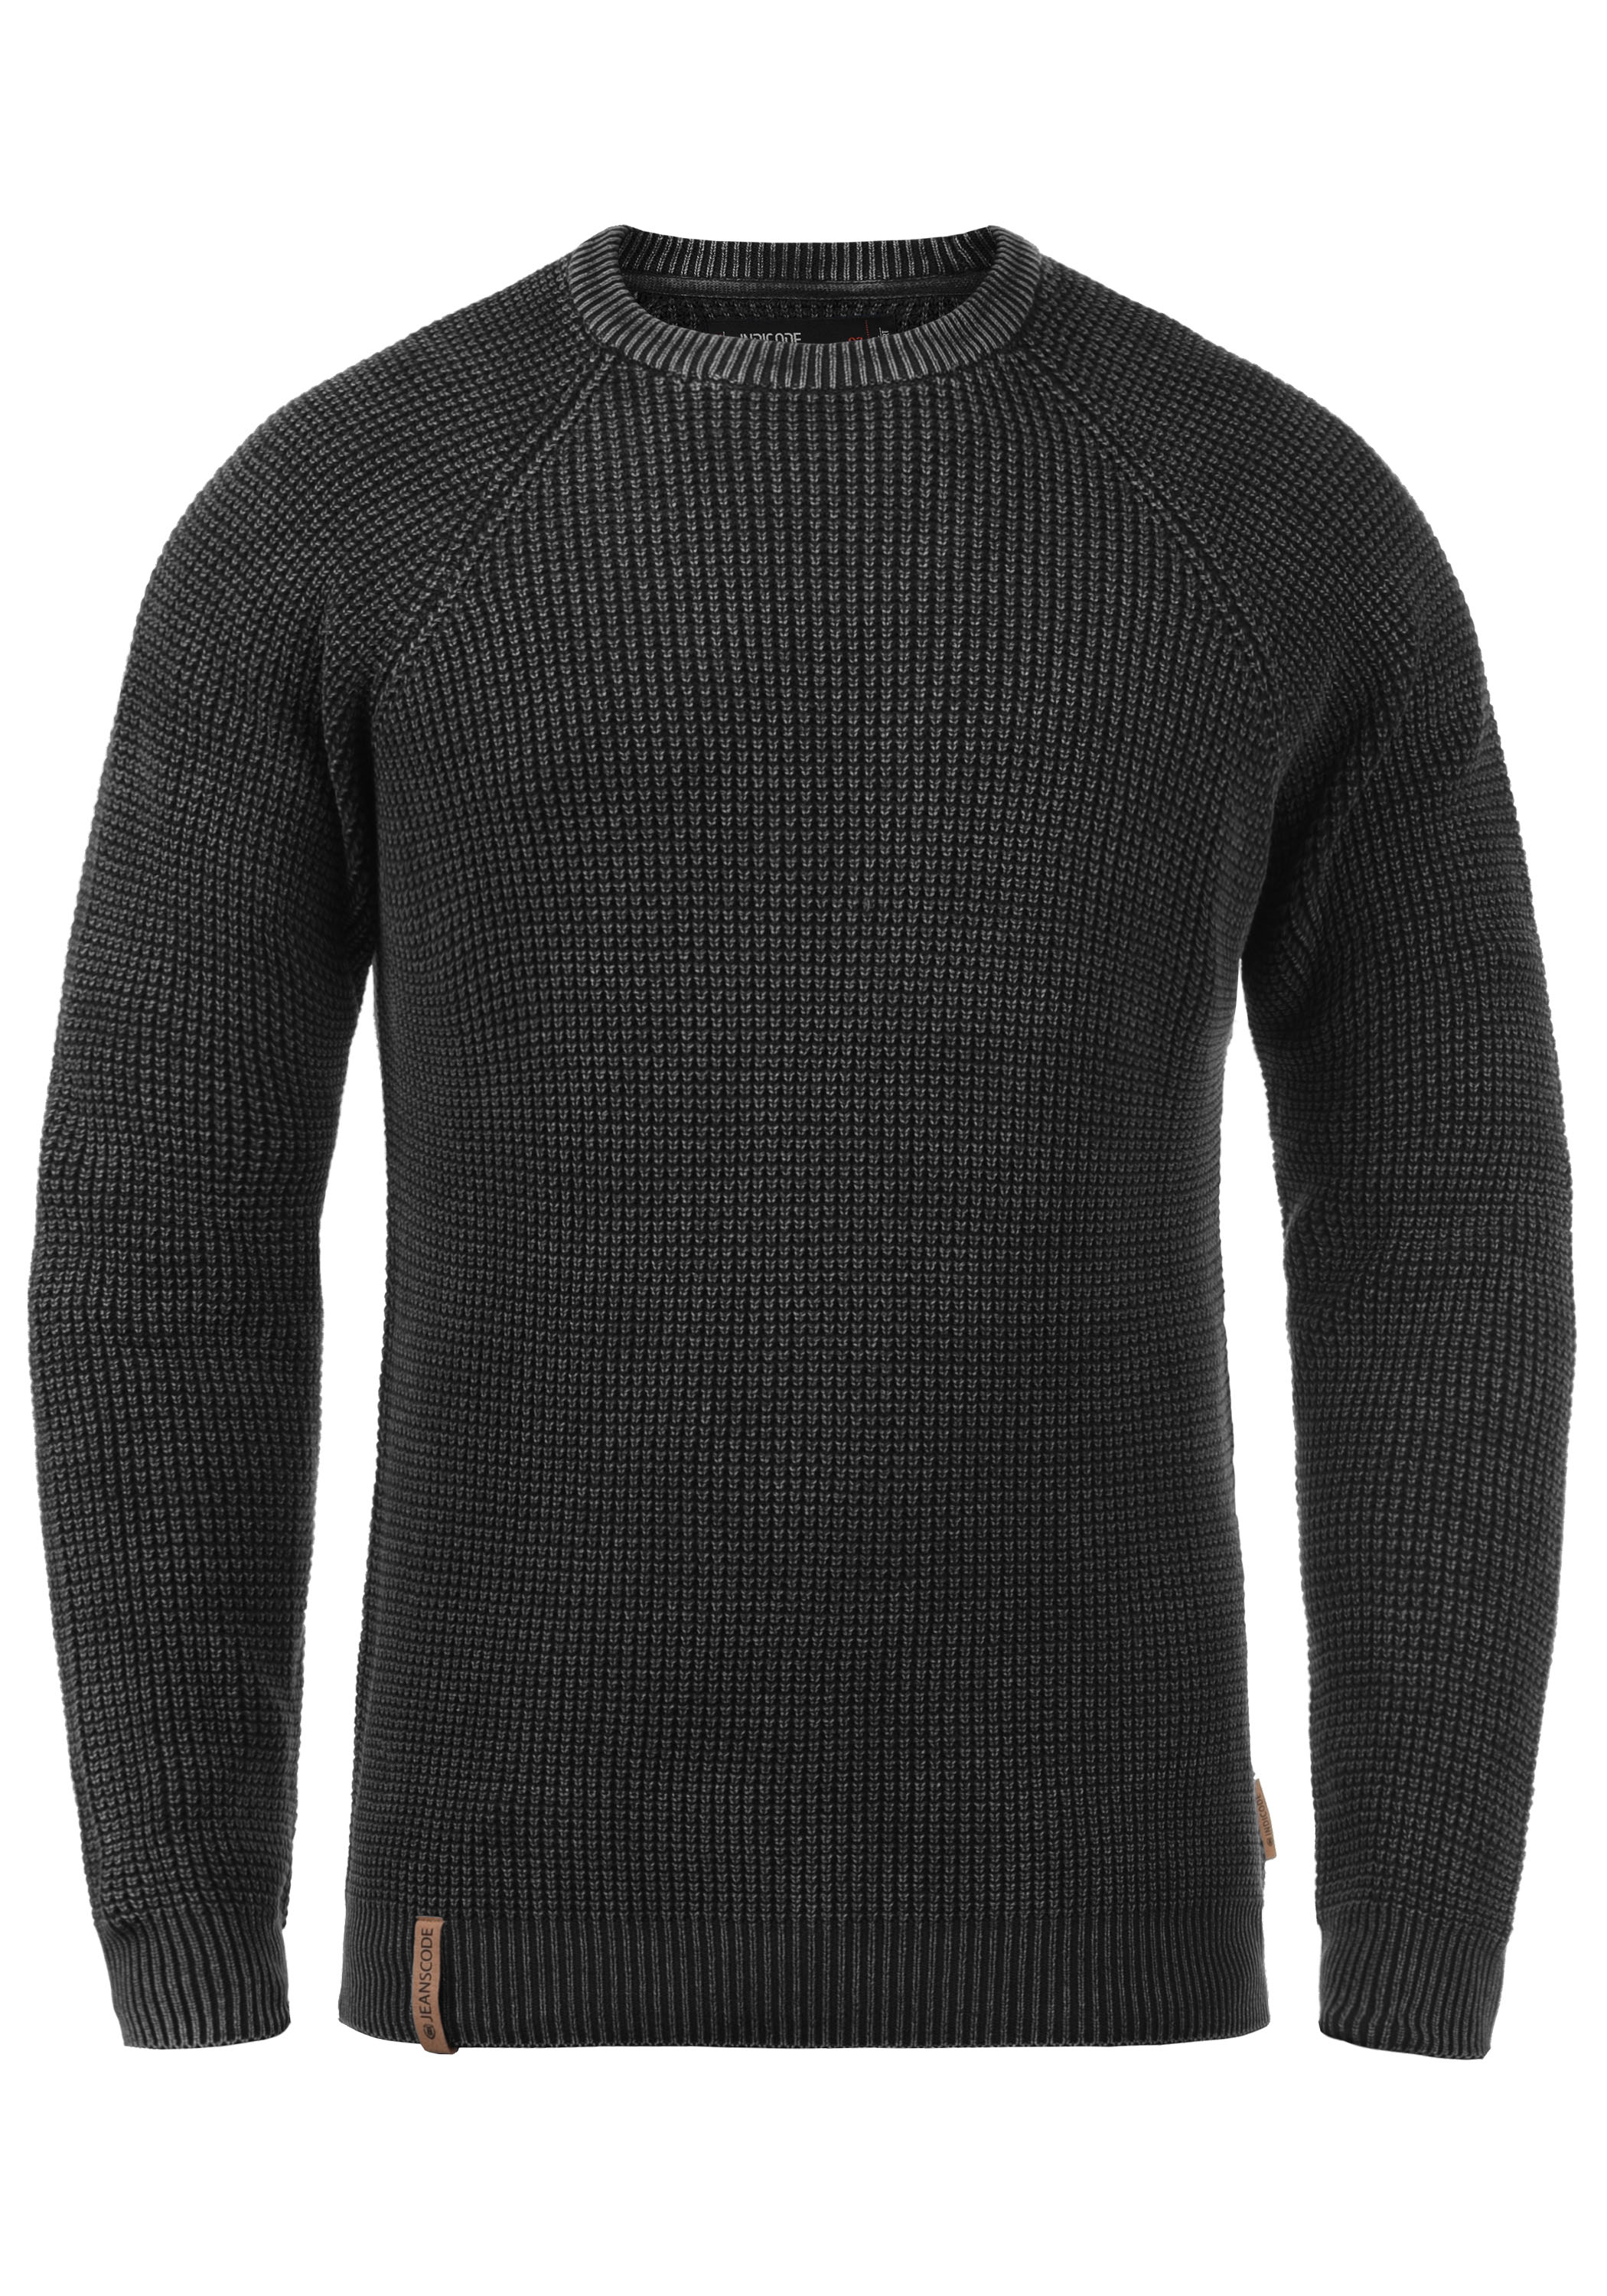 Пуловер INDICODE Strick IDRockford, черный пуловер indicode strick черный